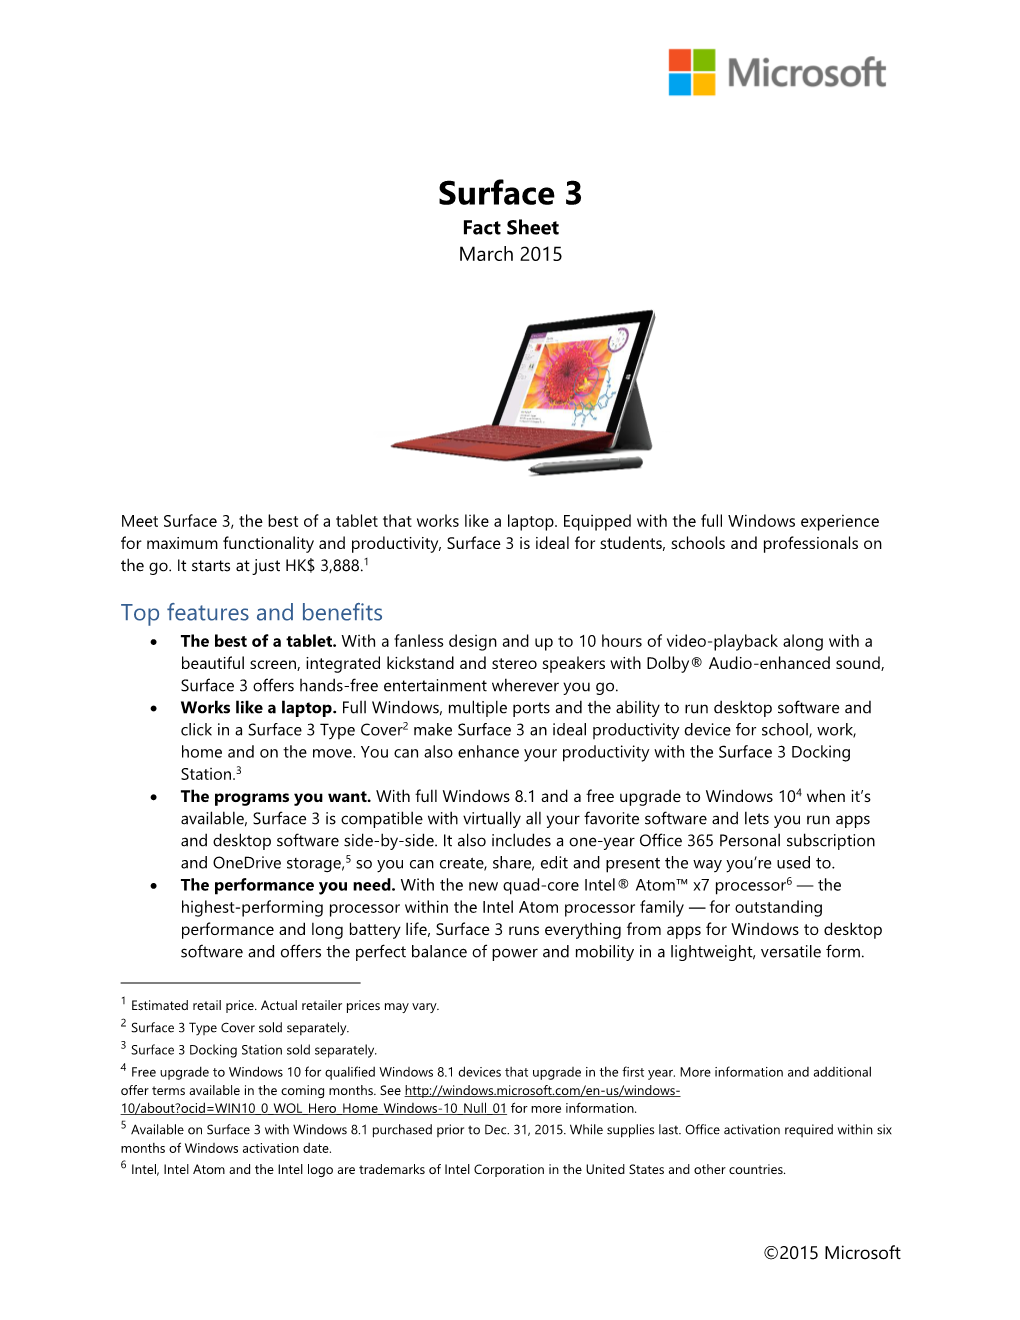 Surface 3 Launch HK Fact Sheet ENG